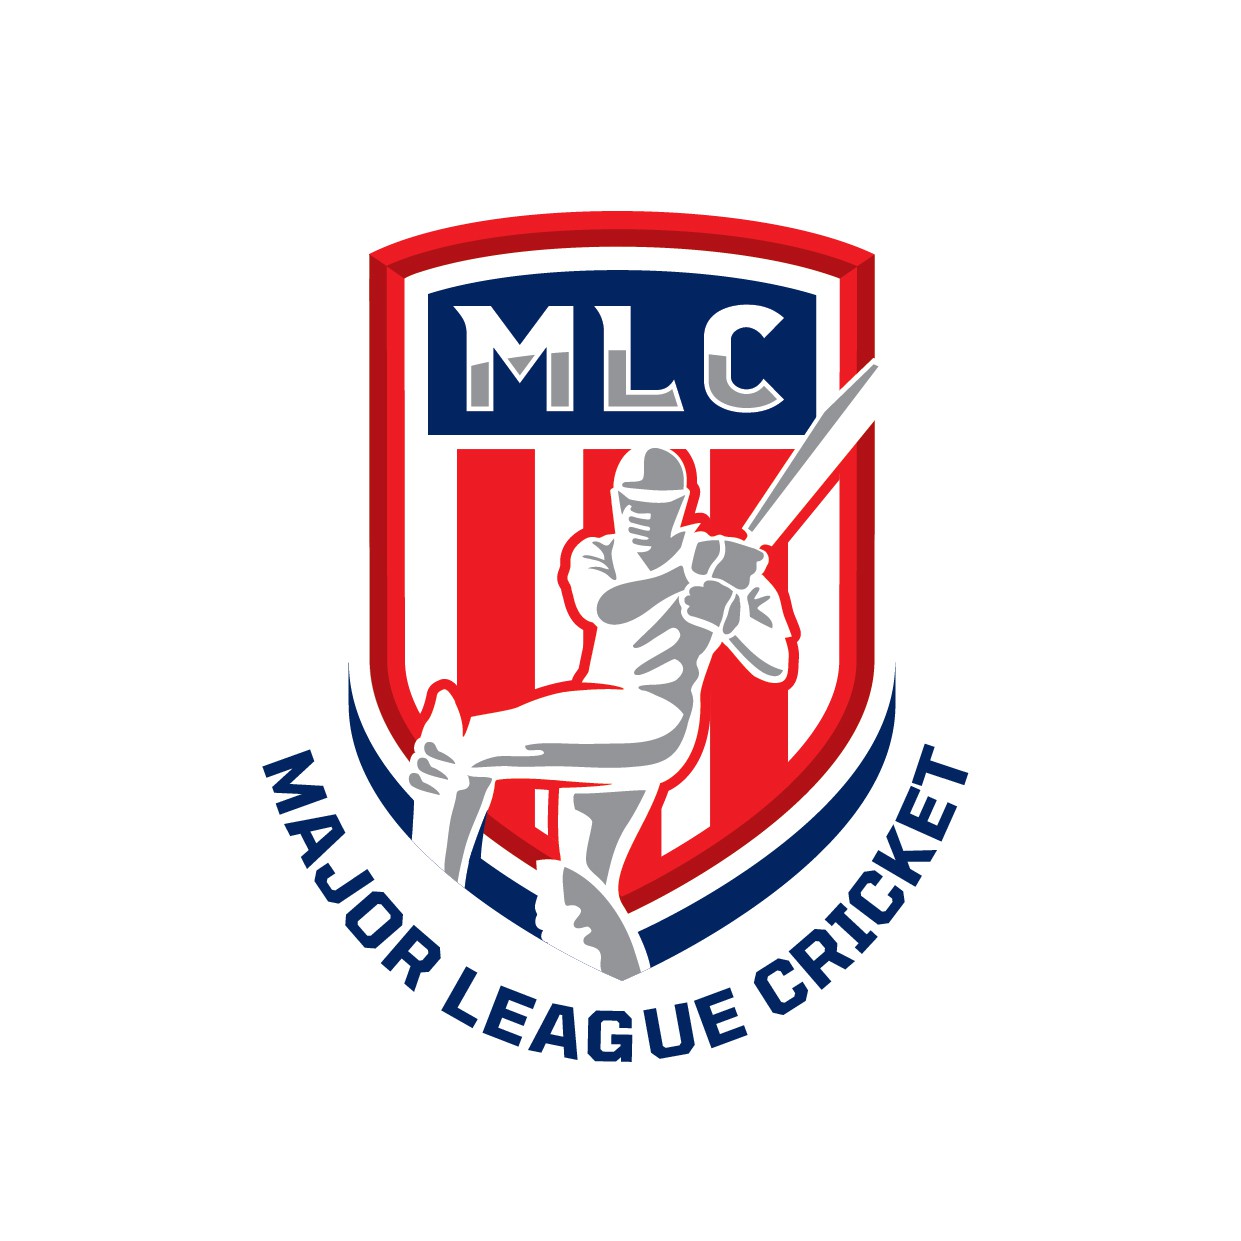 League Logos - Free League Logo Ideas, Design & Templates